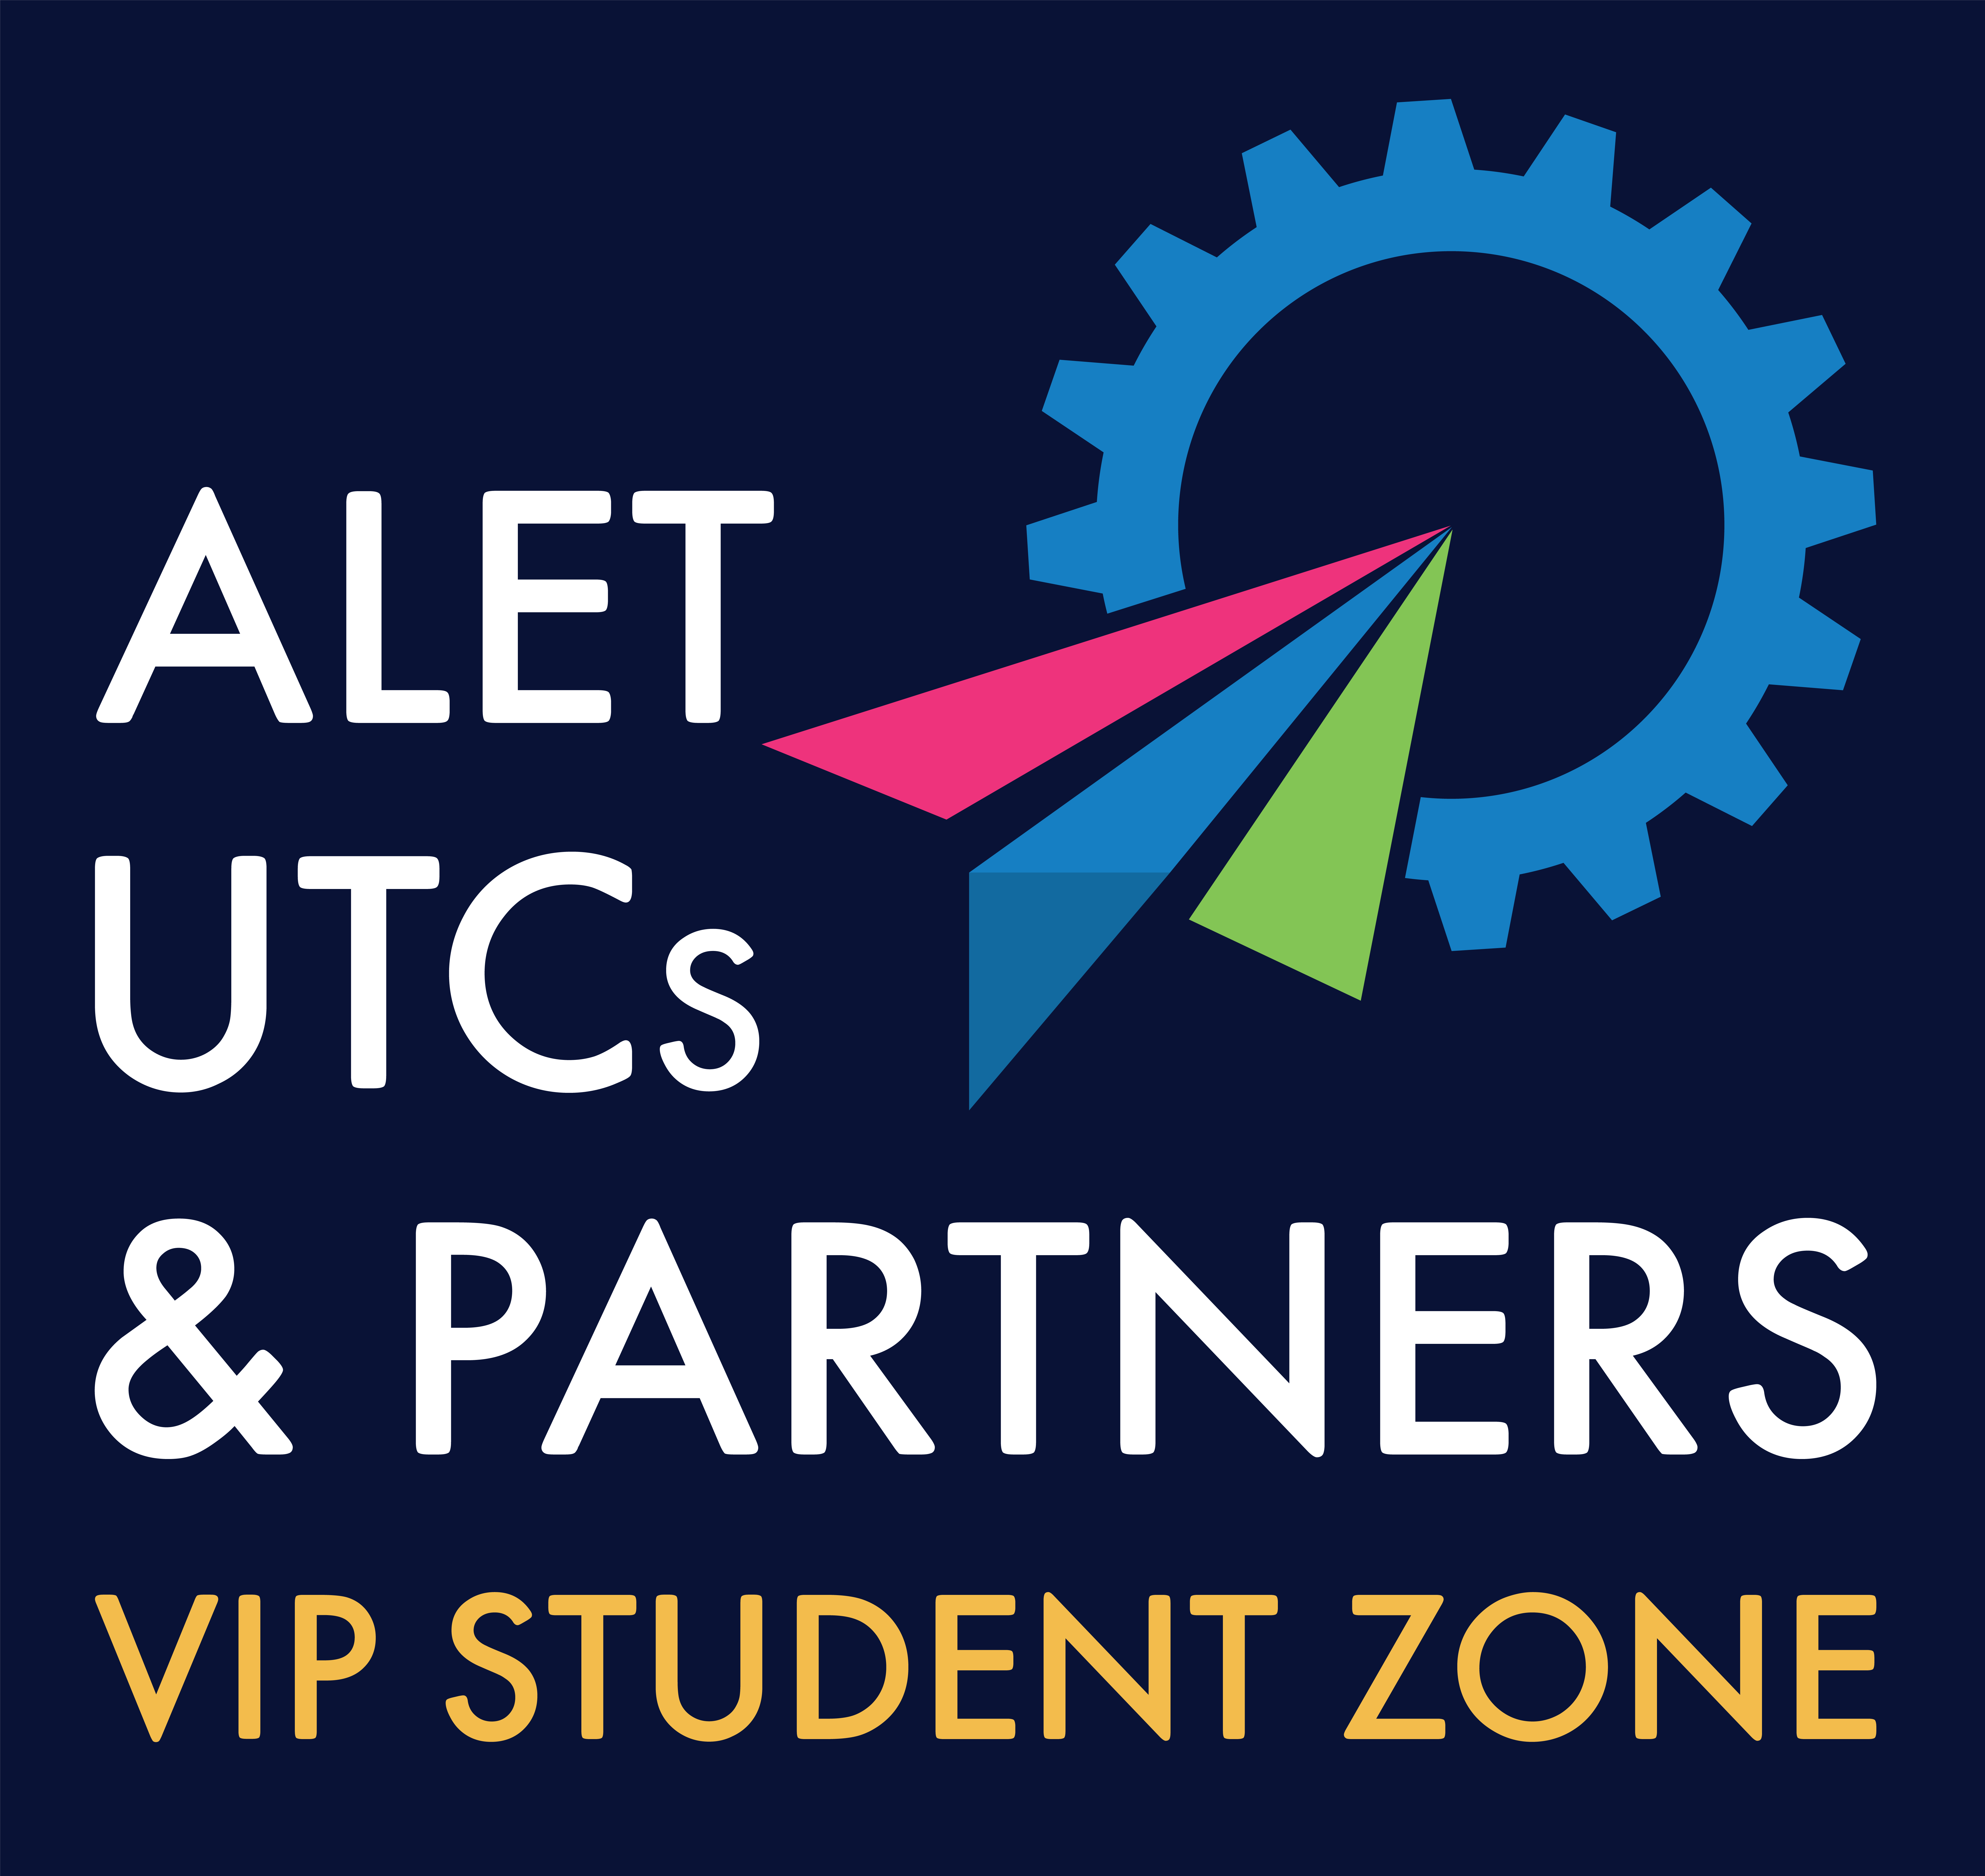 ALET UTC & Partners - VIP Student Zone